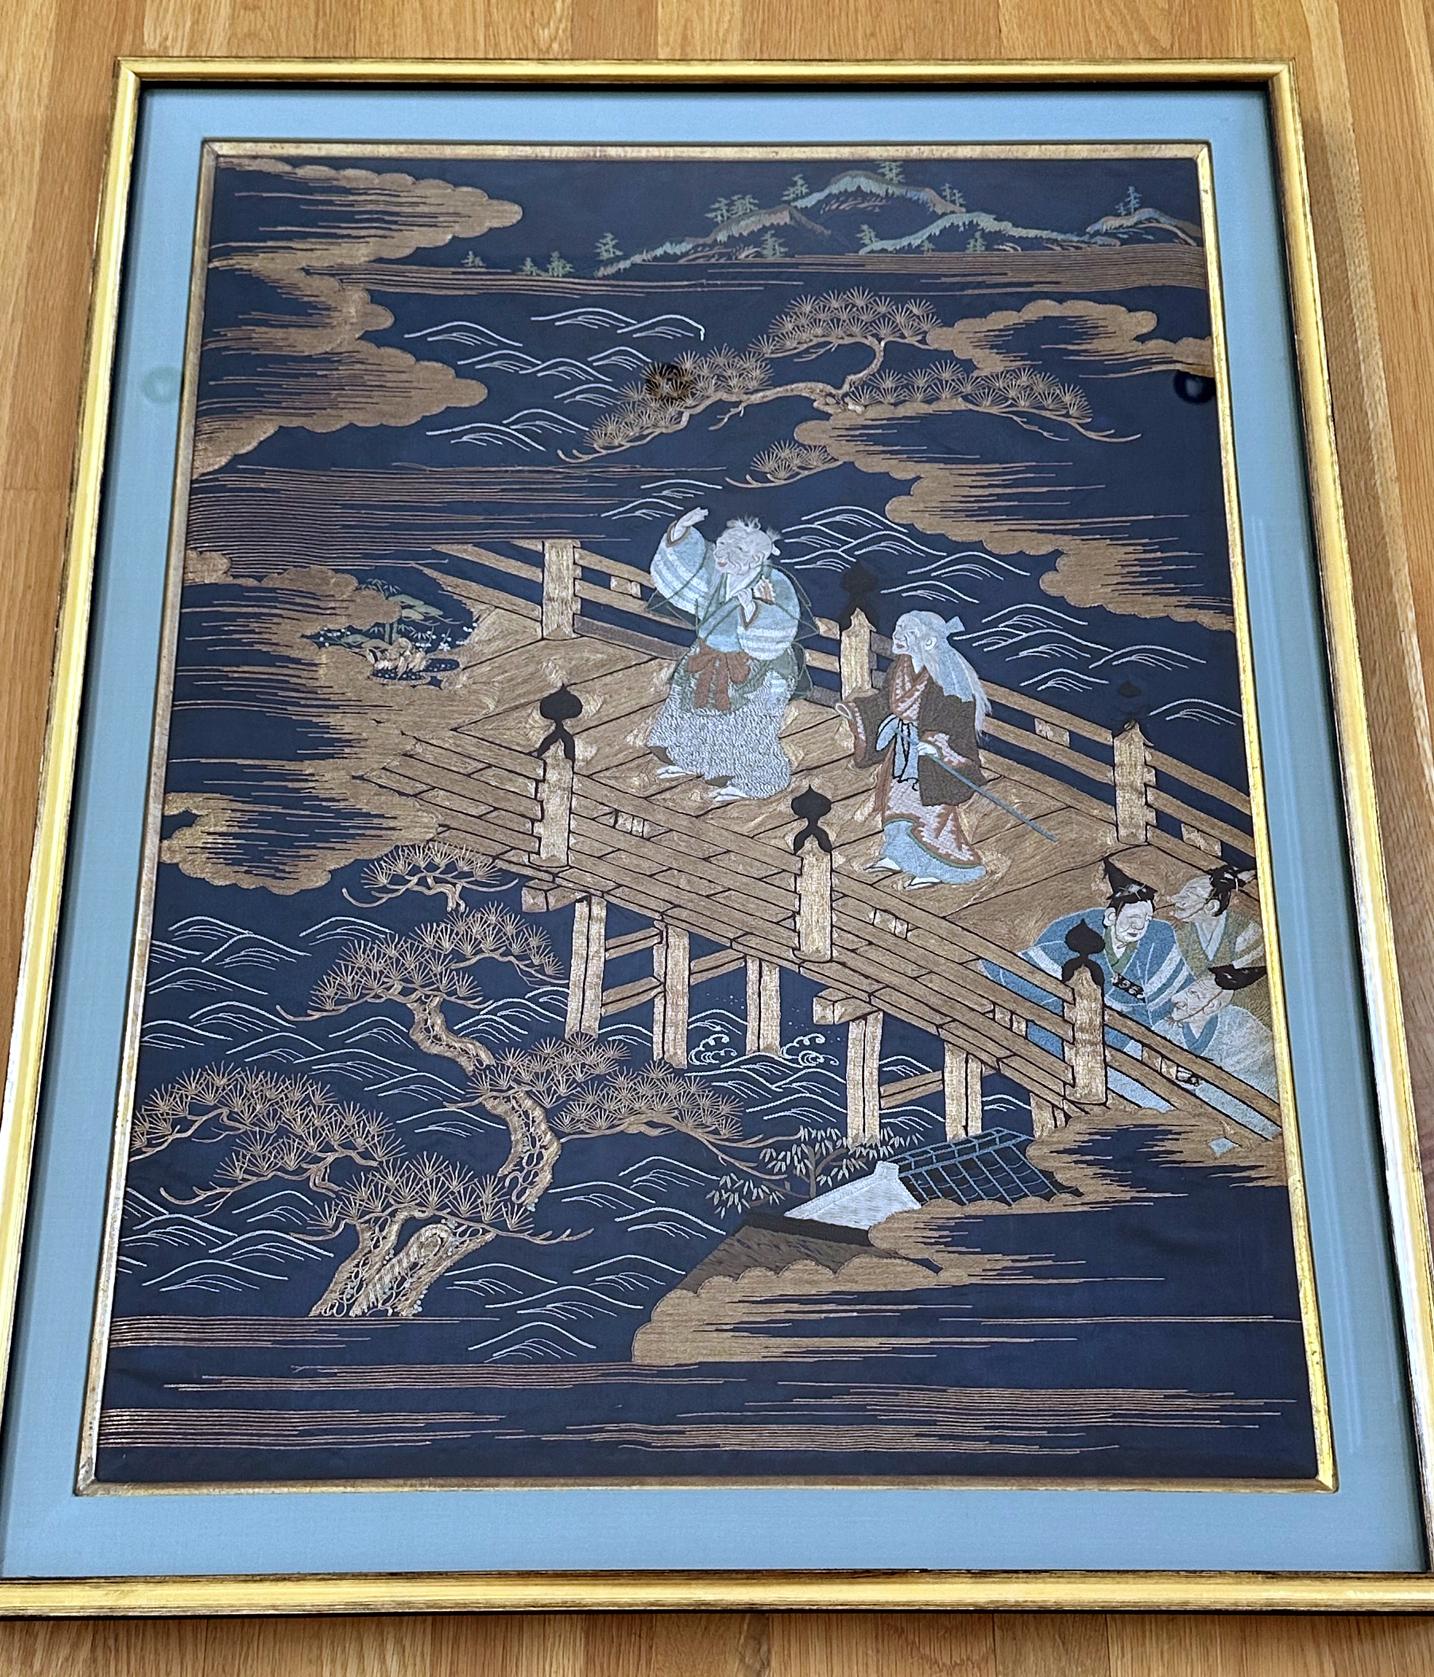 Ein fein besticktes japanisches Fukusa-Paneel aus Seide, präsentiert in einem schönen, mit Seide ausgekleideten Rahmen aus Goldholz (neu gerahmt und verglast), circa Ende des 19. Jahrhunderts der Meiji-Periode. Fukusa ist eine traditionelle